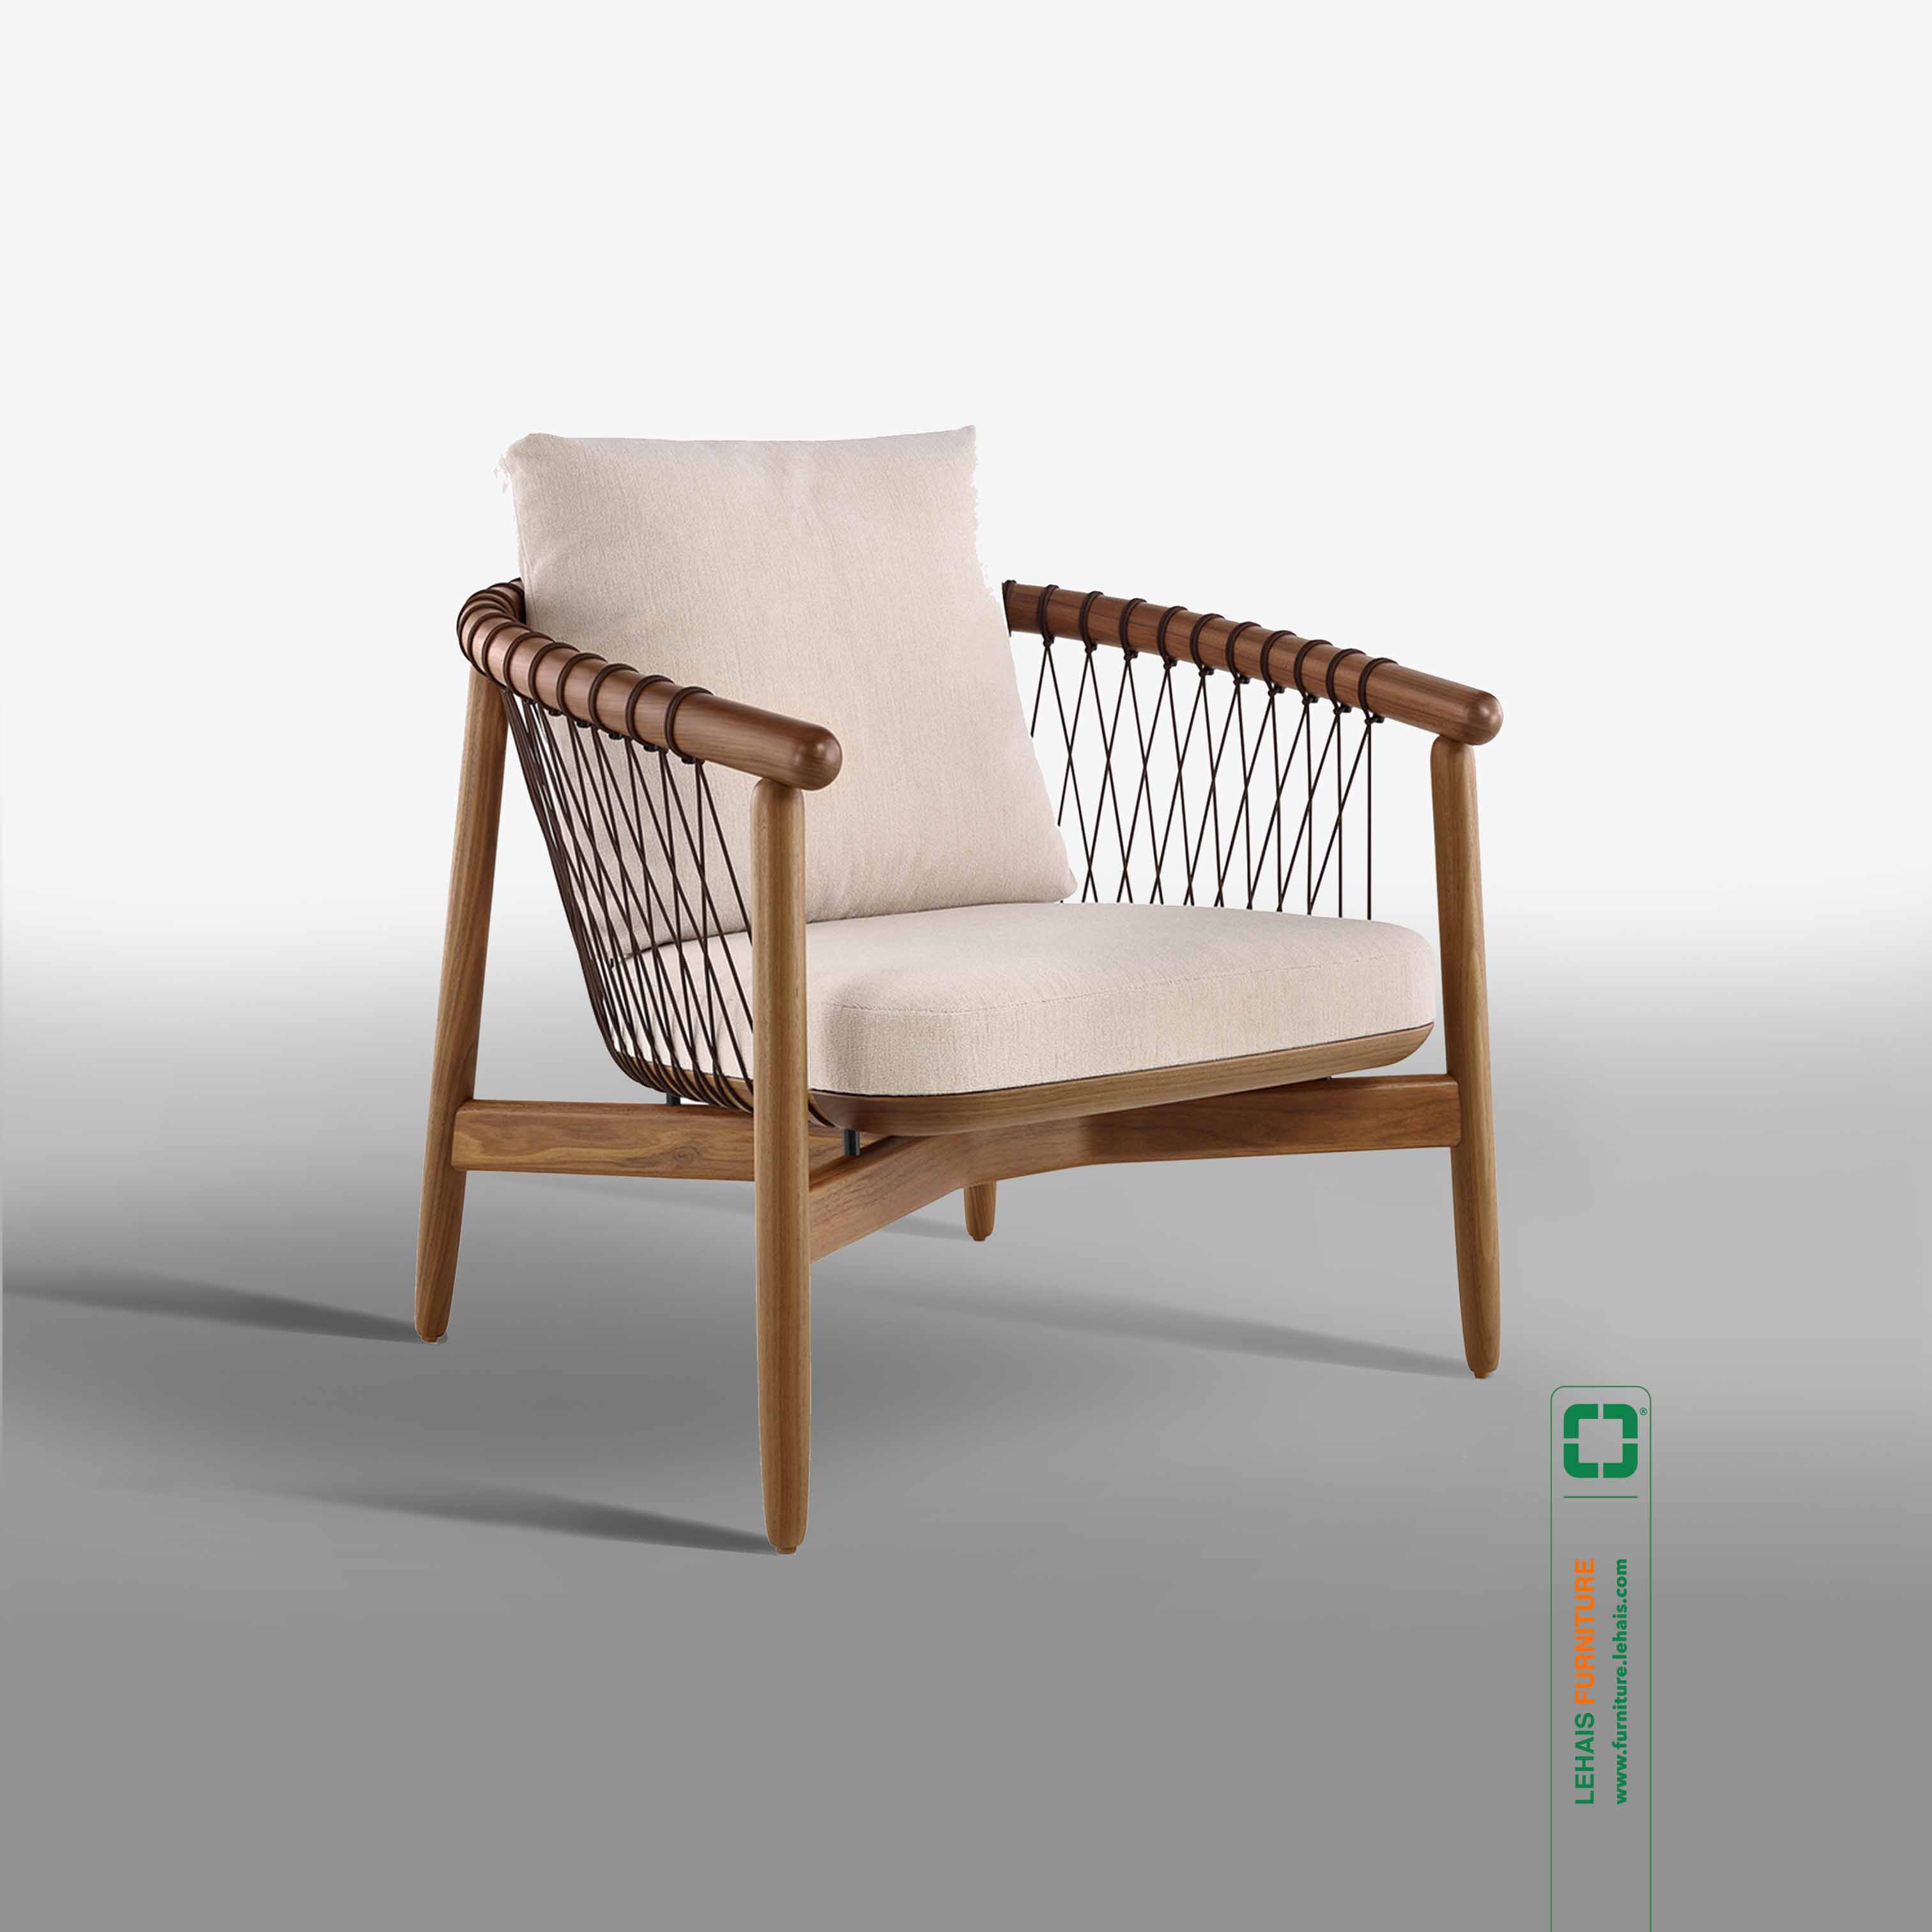 Chair Crosshatch - G49LHFU